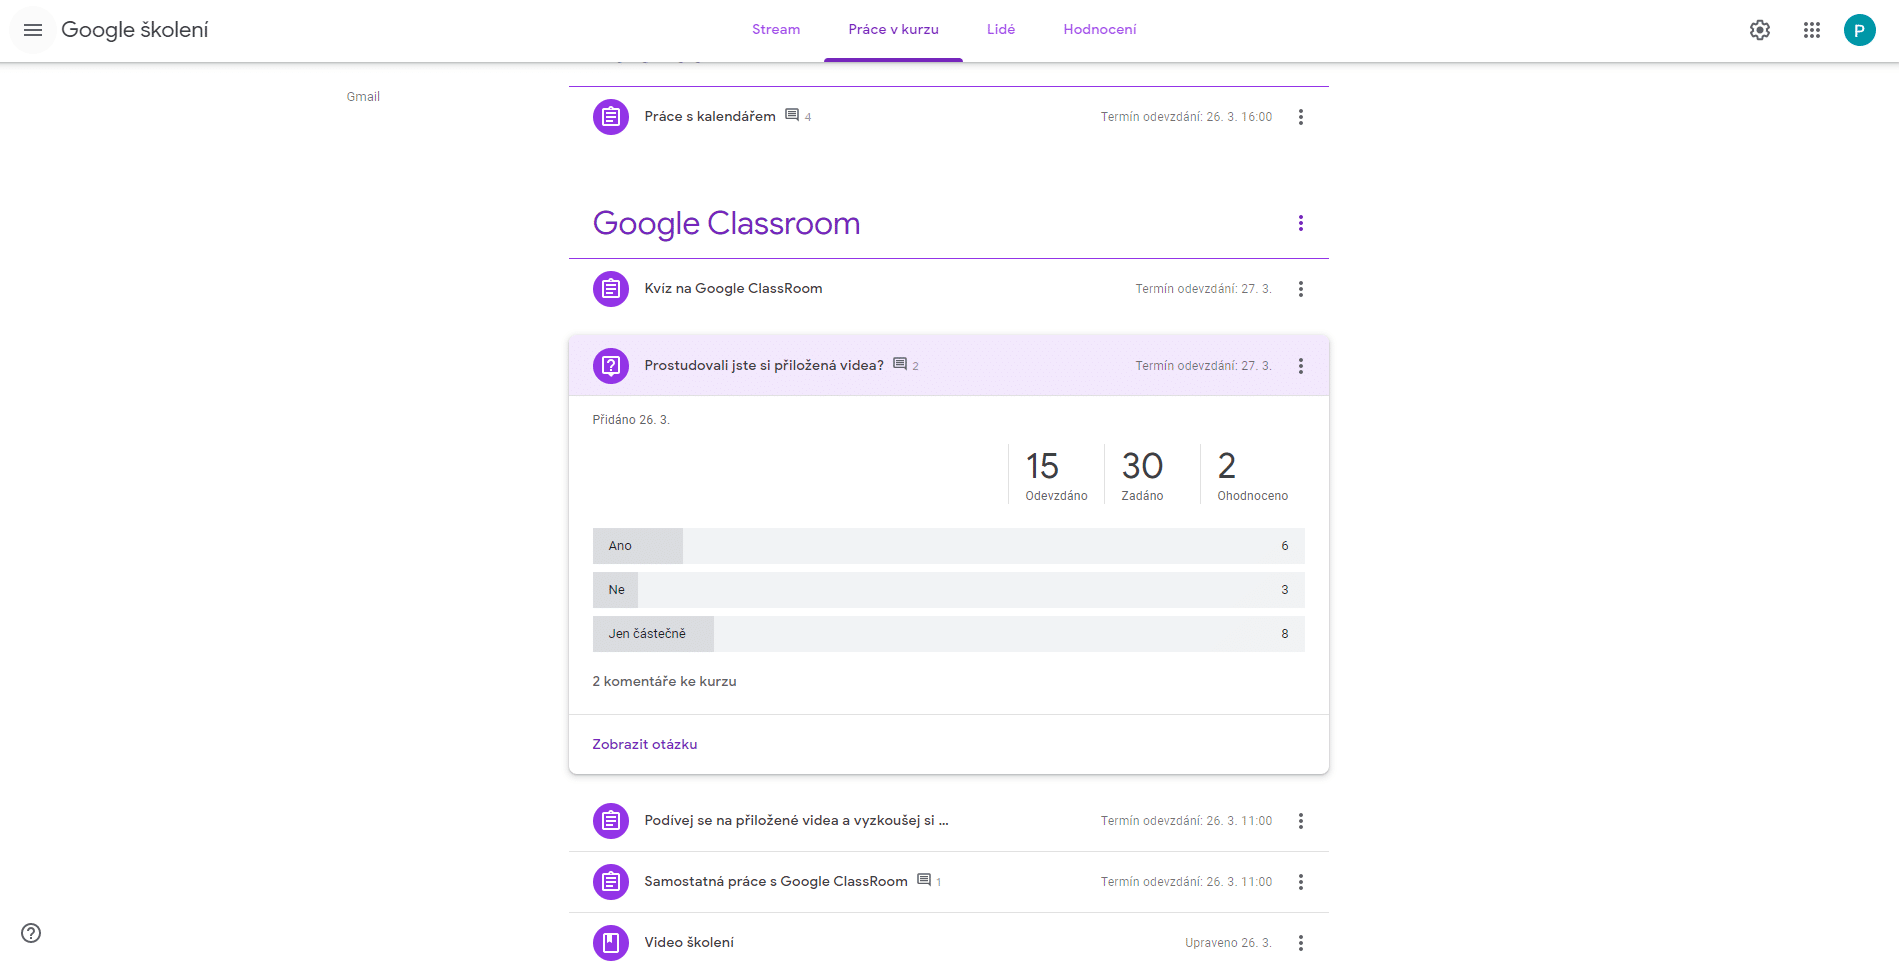 Vyhodnocení otázky položené v Google Classroom.